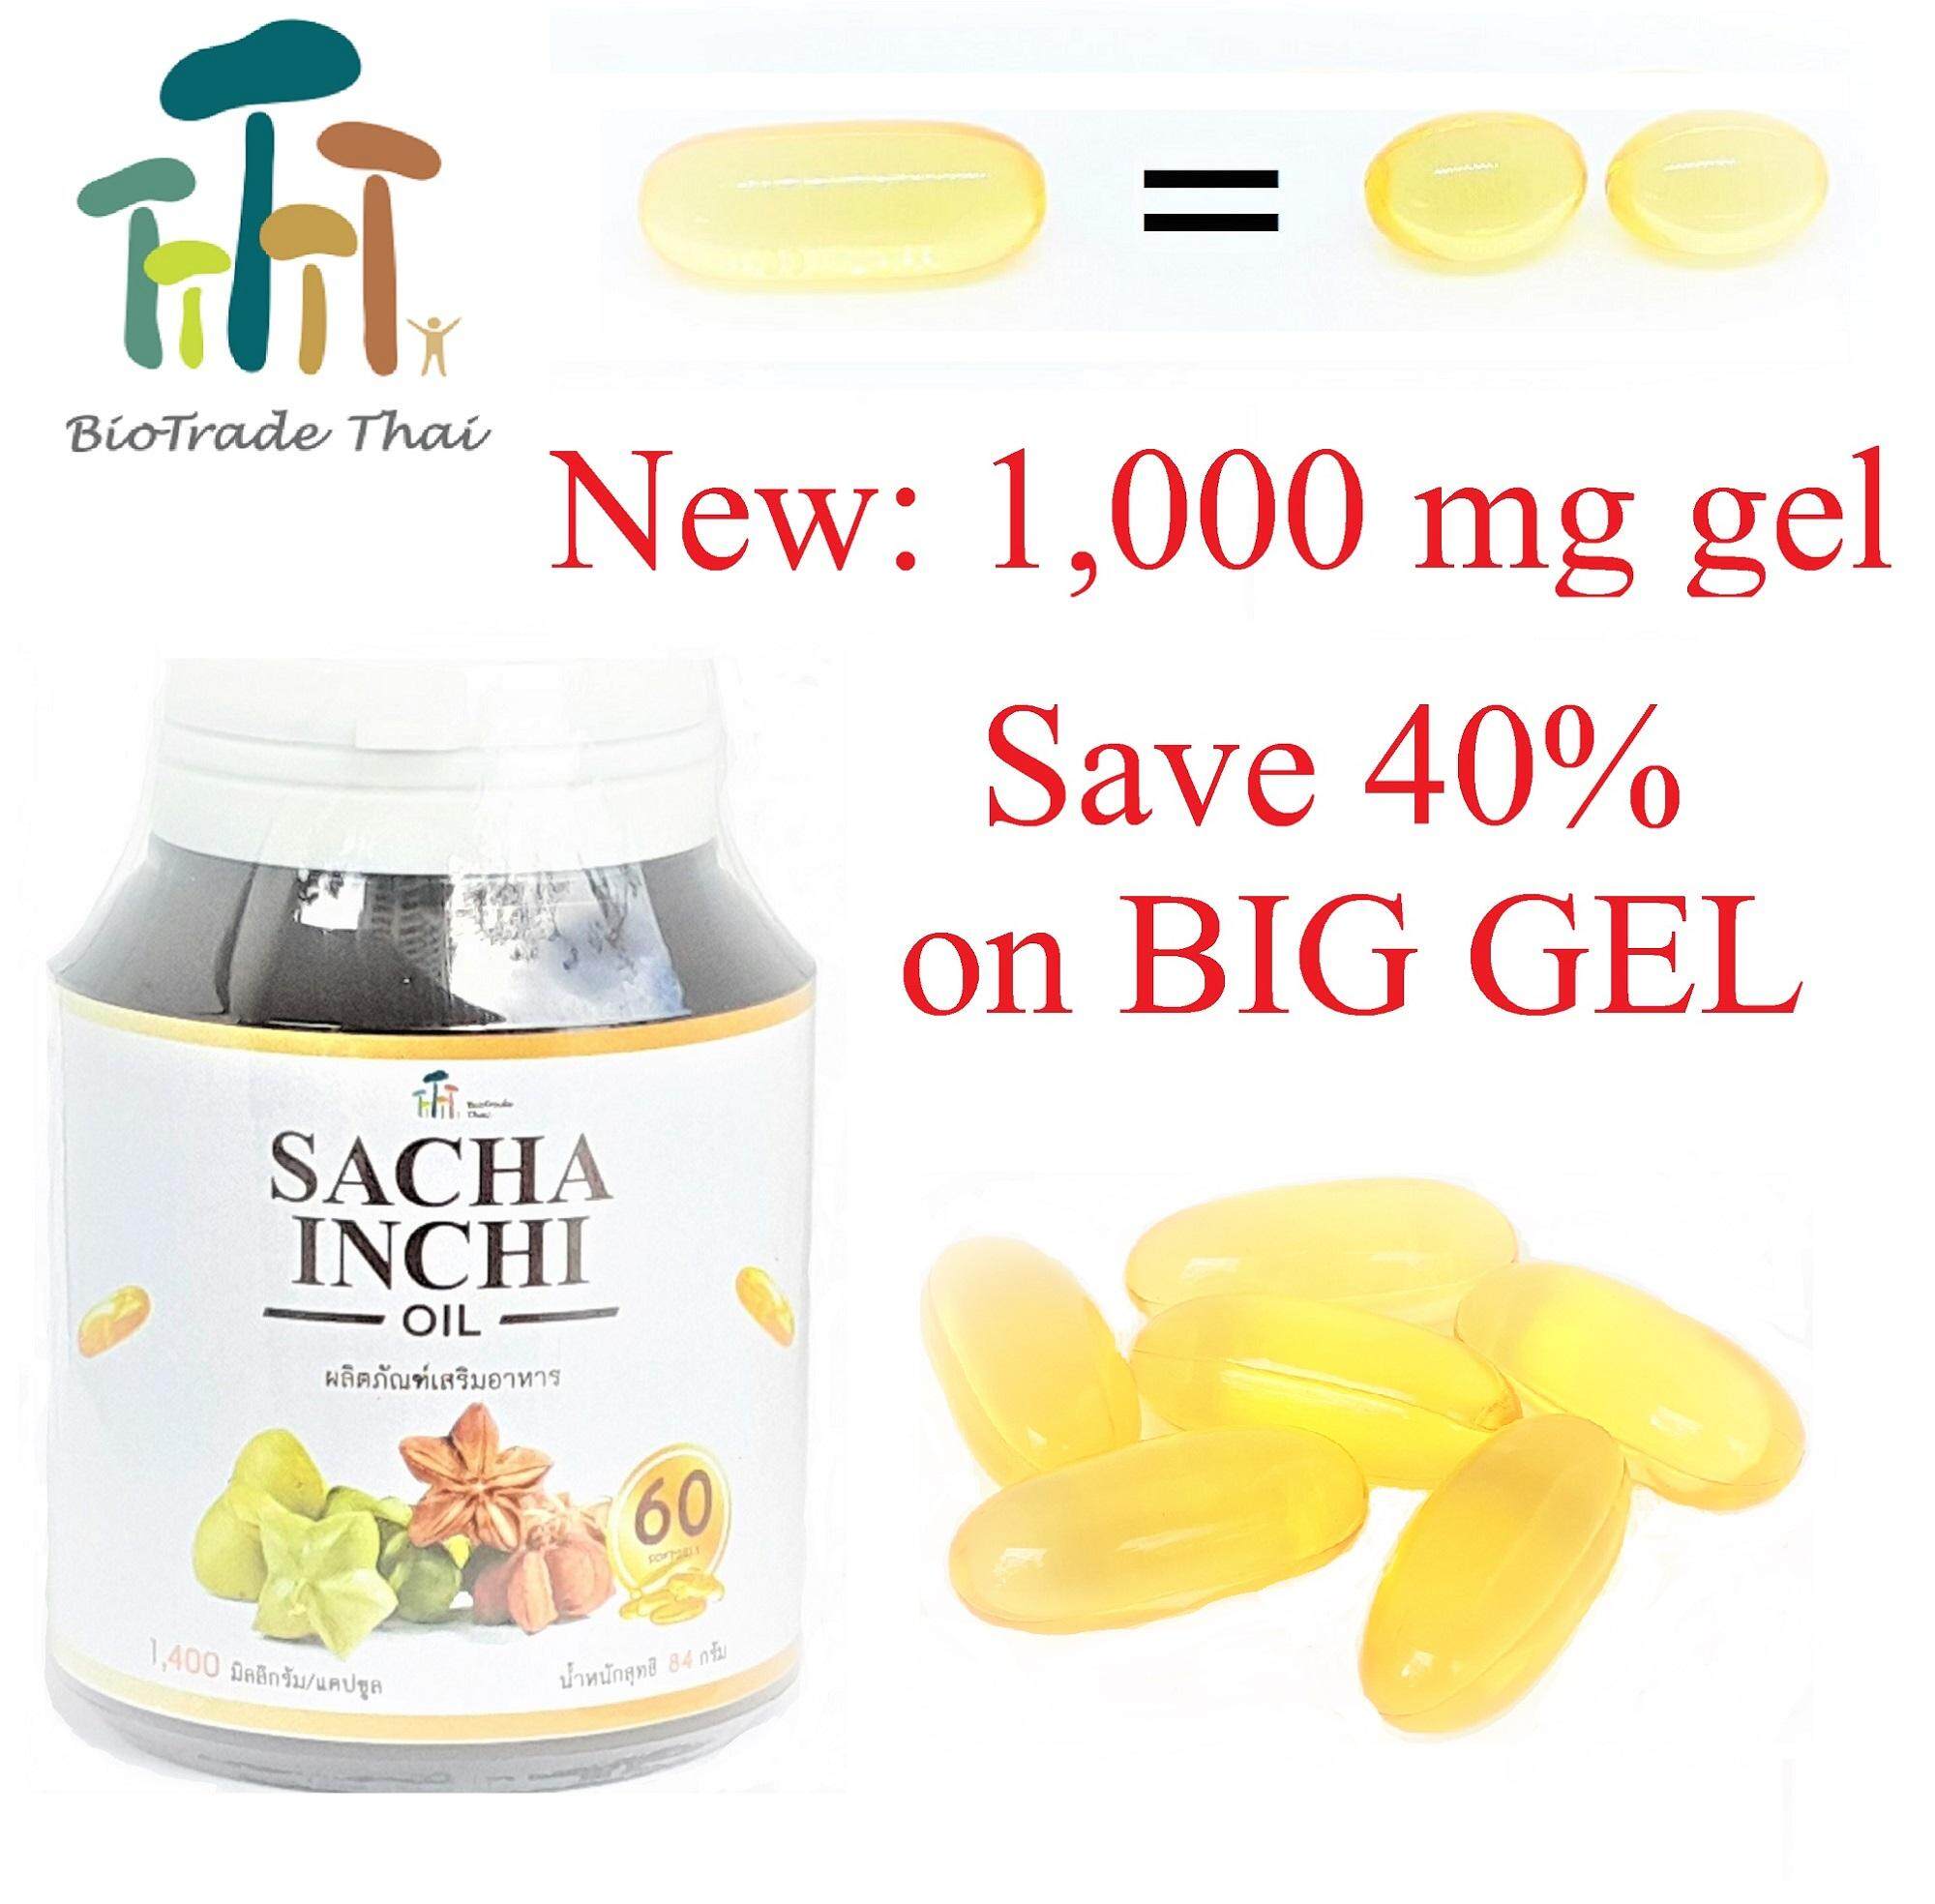 แนะนำ BIG GEL 1,000 ม.ก. ใหม่: น้ำมันถั่วดาวอินคา สกัดเย็น บริสุทธิ์ บรรจุในเจลใหญ่ ขนาด 1000 มิลิกรัม ( 1 กระปุก บรรจุ 60 เม็ด);1 bottle of 60 Sacha Inchi oil 1,000 mg soft gels, cold pressed, sachainchi, tua dao inca; น้ำมันถั่วดาวอินคา 60 แคปซูล 1,000 ม.ก.